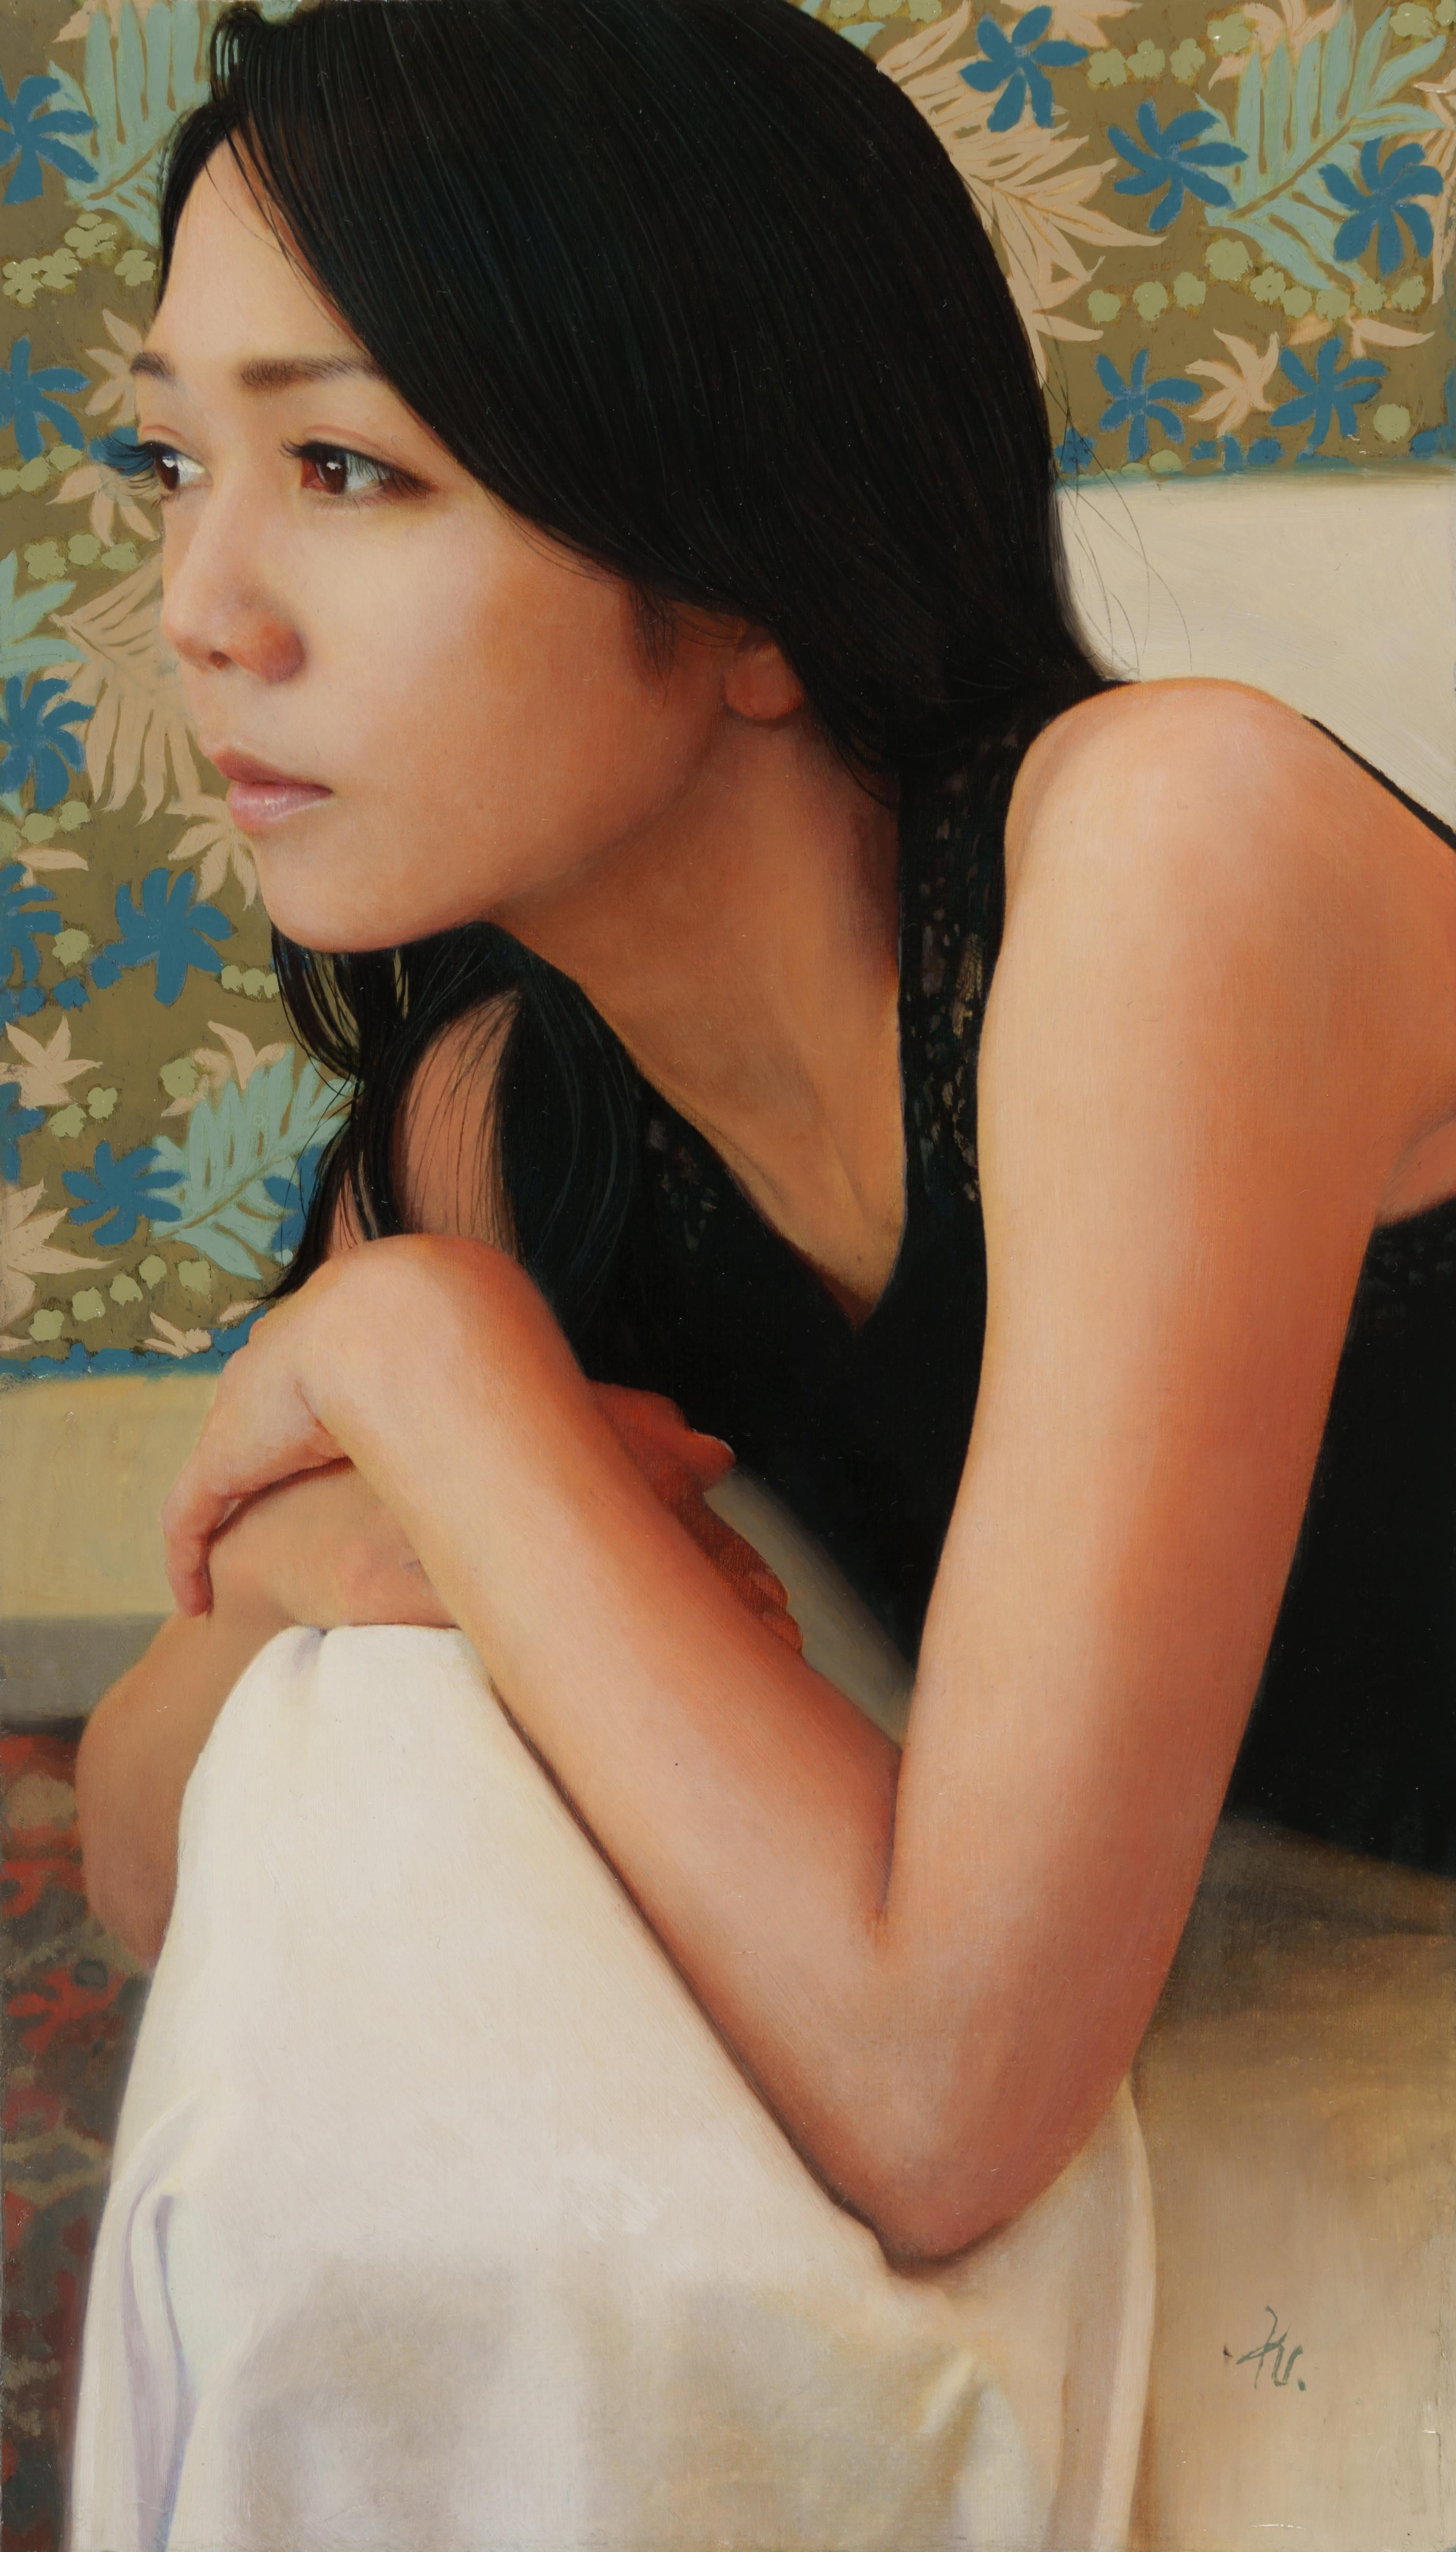 Kazuya Ushioda Portrait Painting - "Everglow" Original Handmade Oil Painting